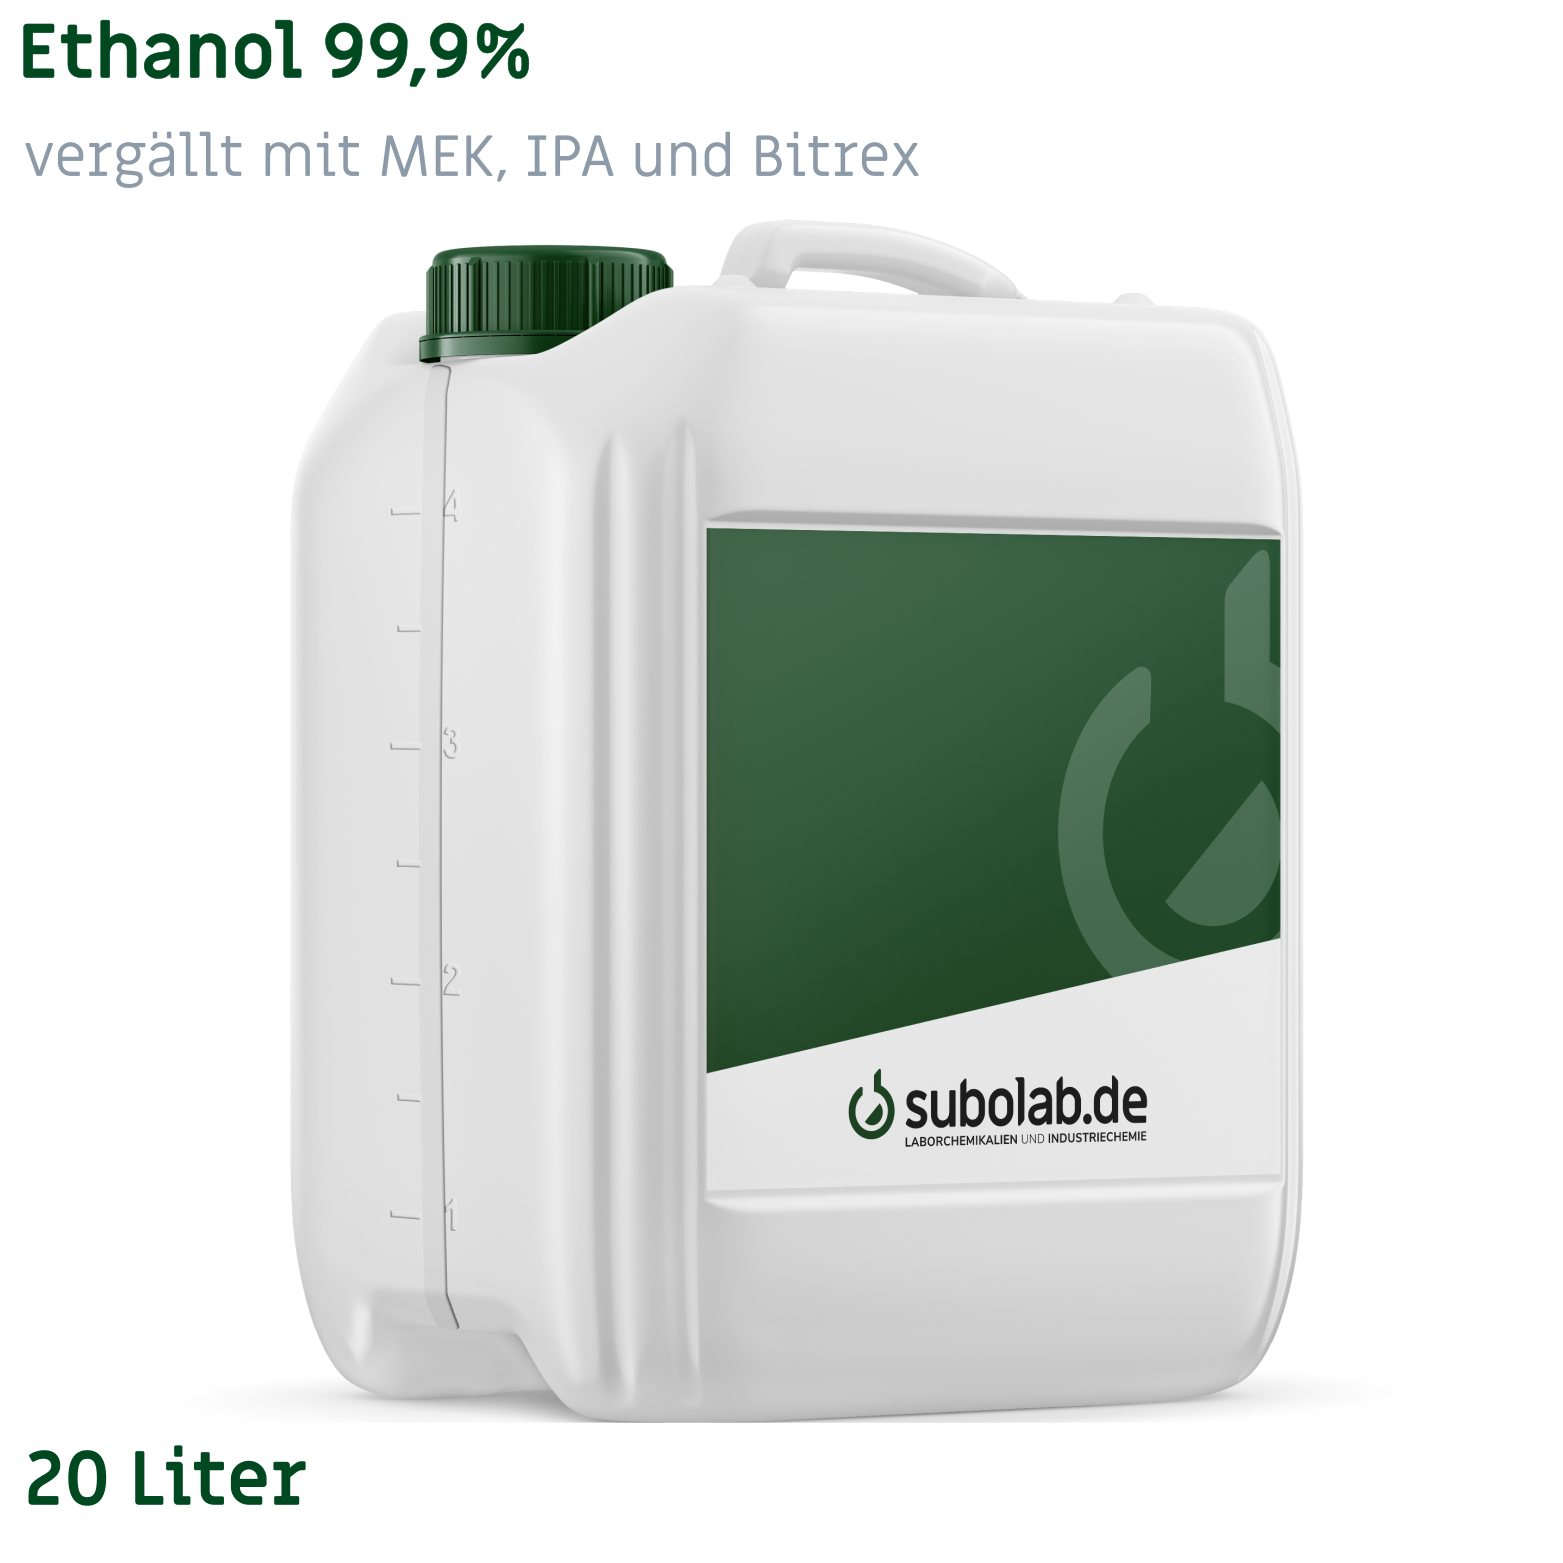 Bild von Ethanol 99,9% vergällt mit MEK, IPA und Bitrex (20 Liter)